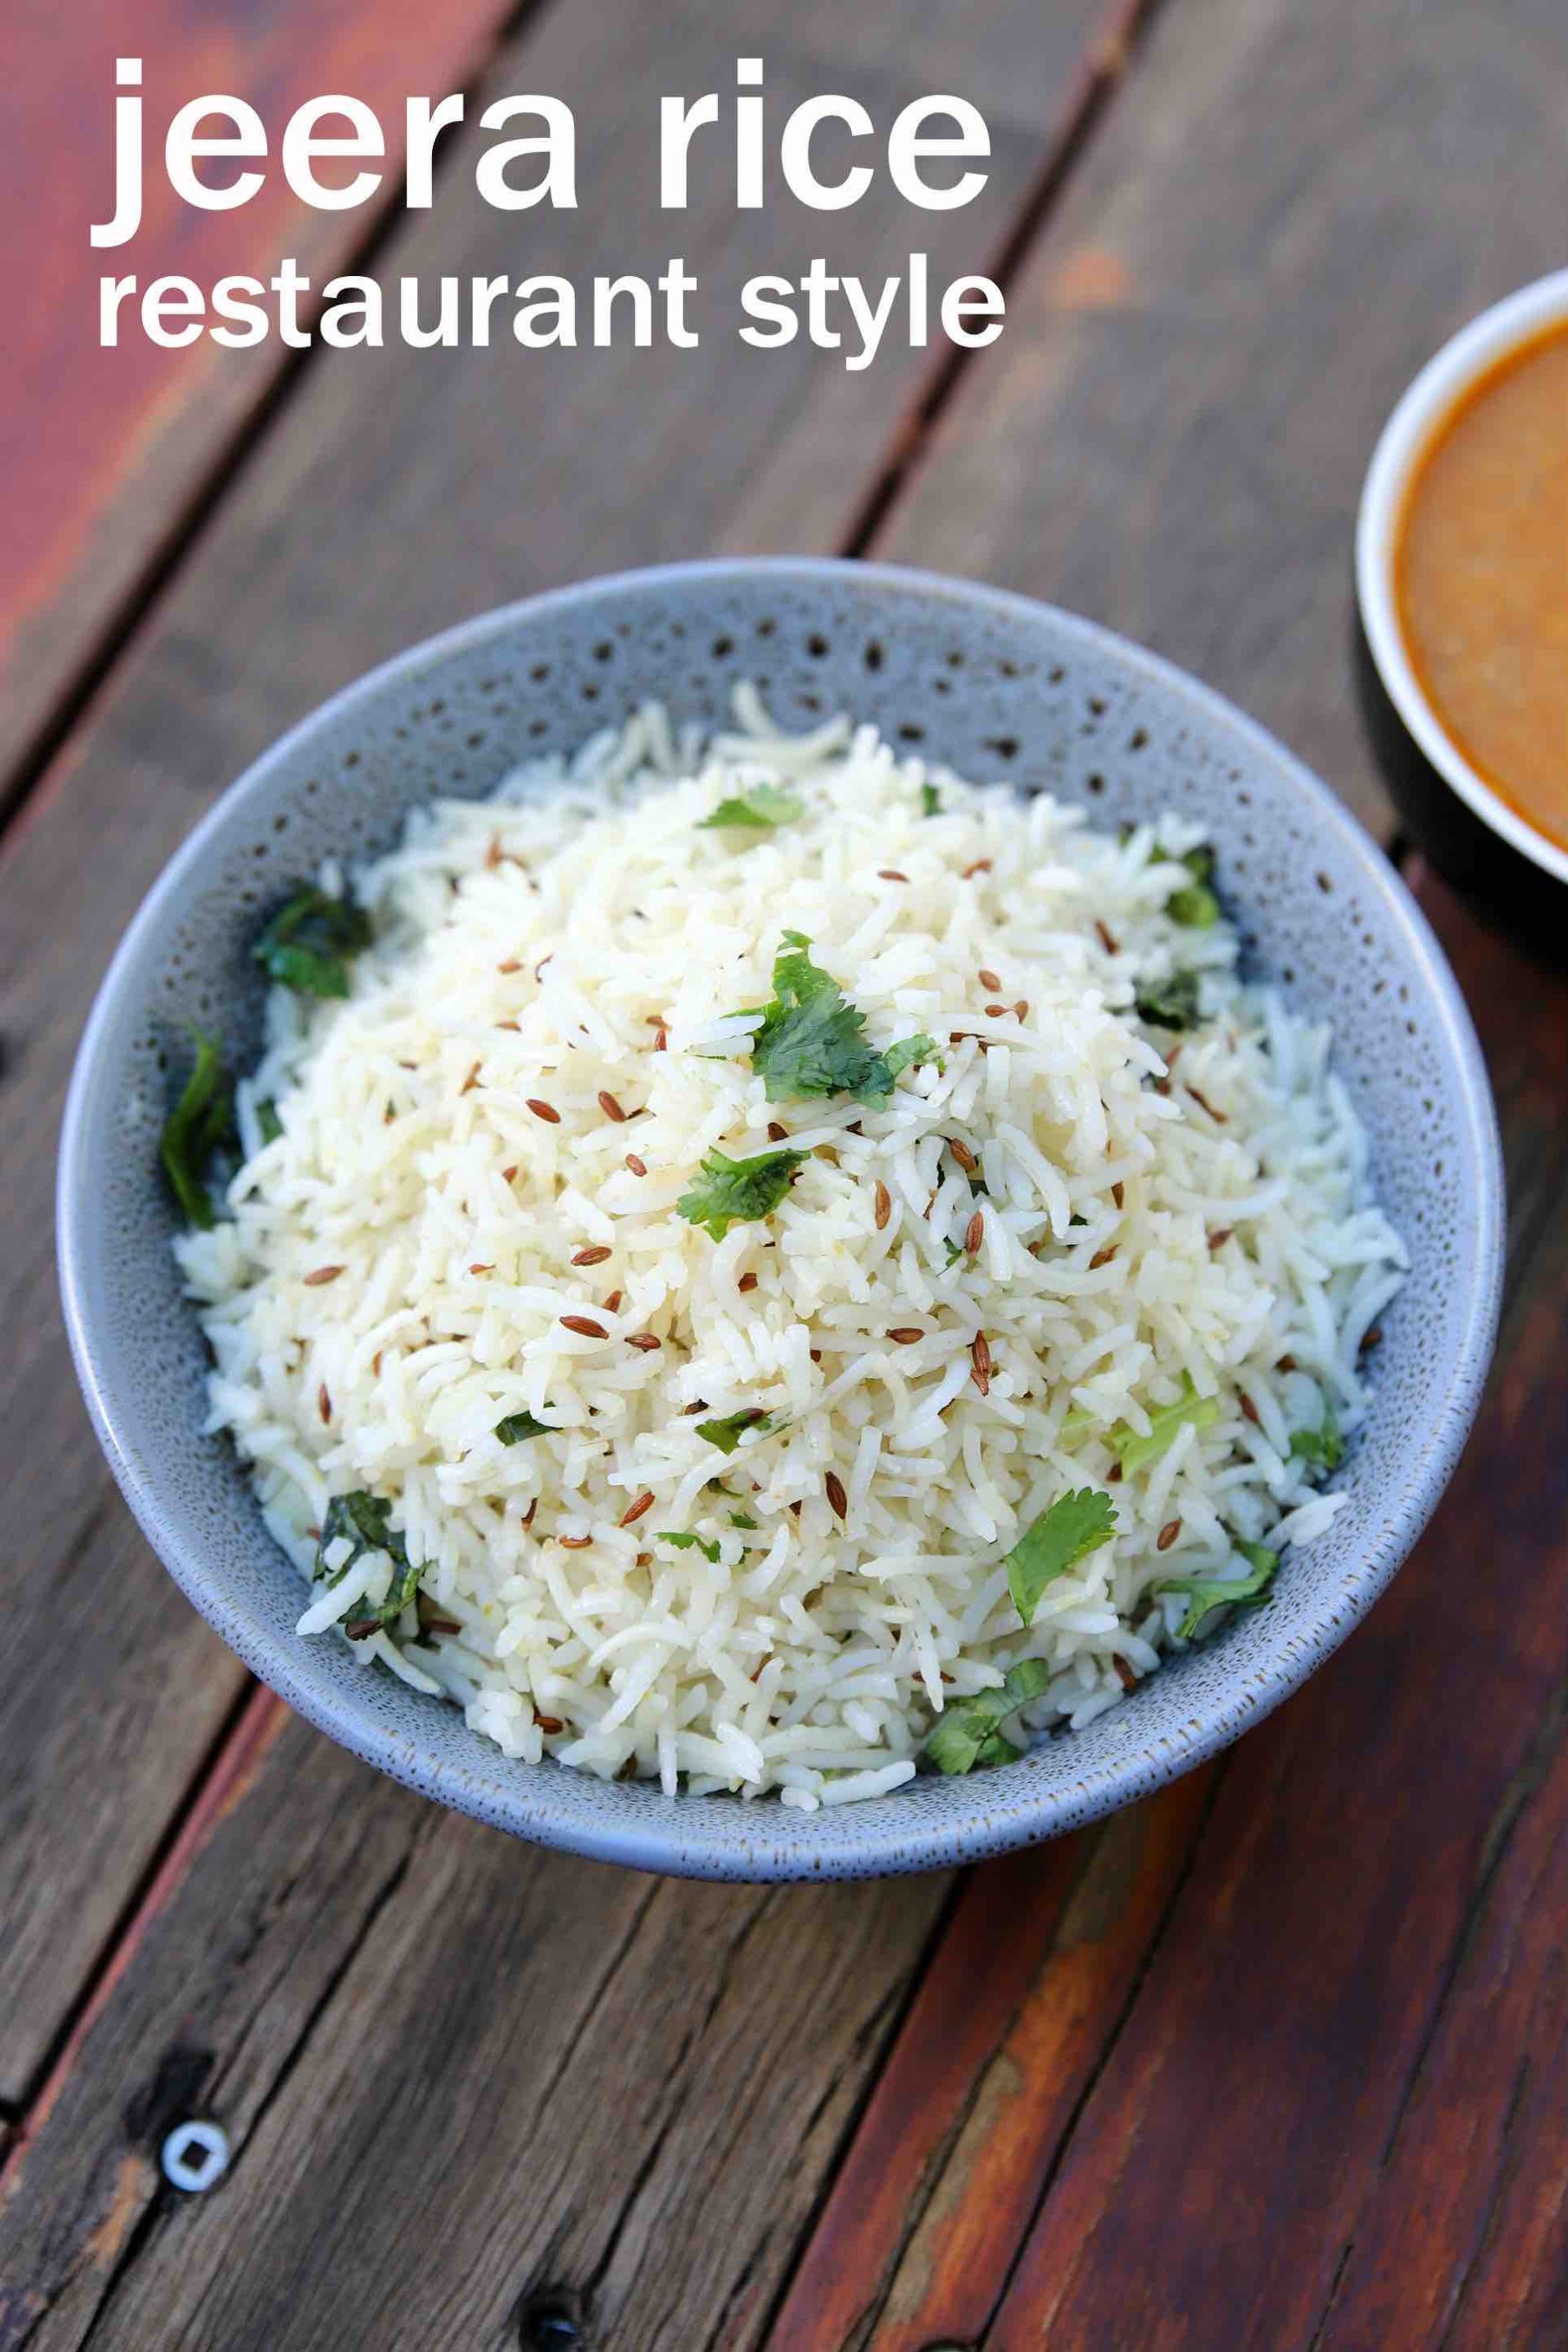 jeera rice recipe | how to make jeera rice | jeera pulao | jeera rice 2 ...